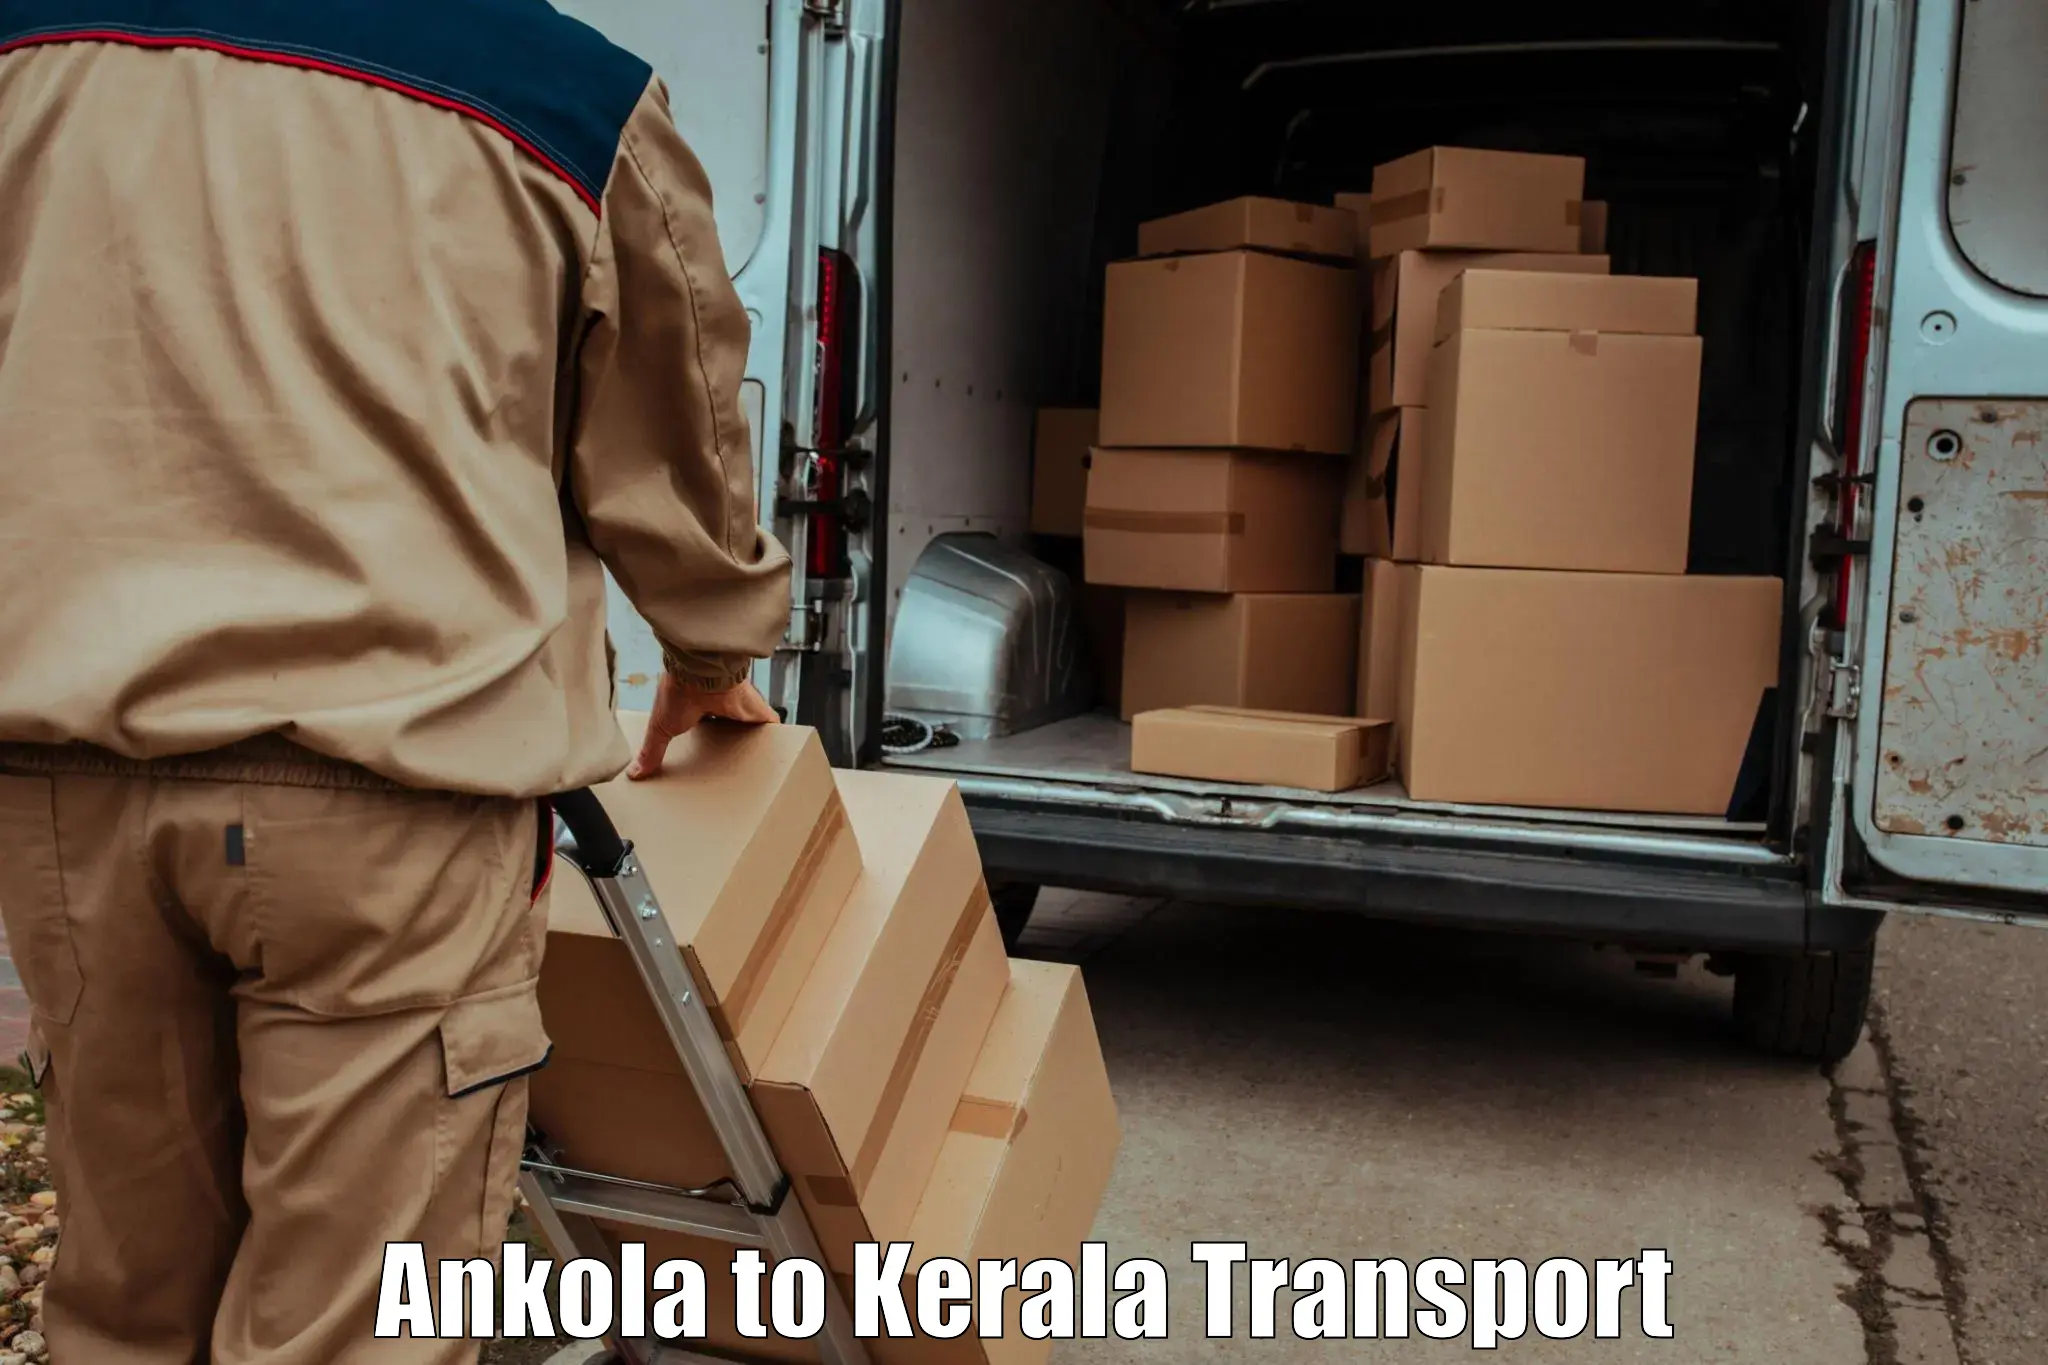 Online transport service Ankola to Kothanalloor